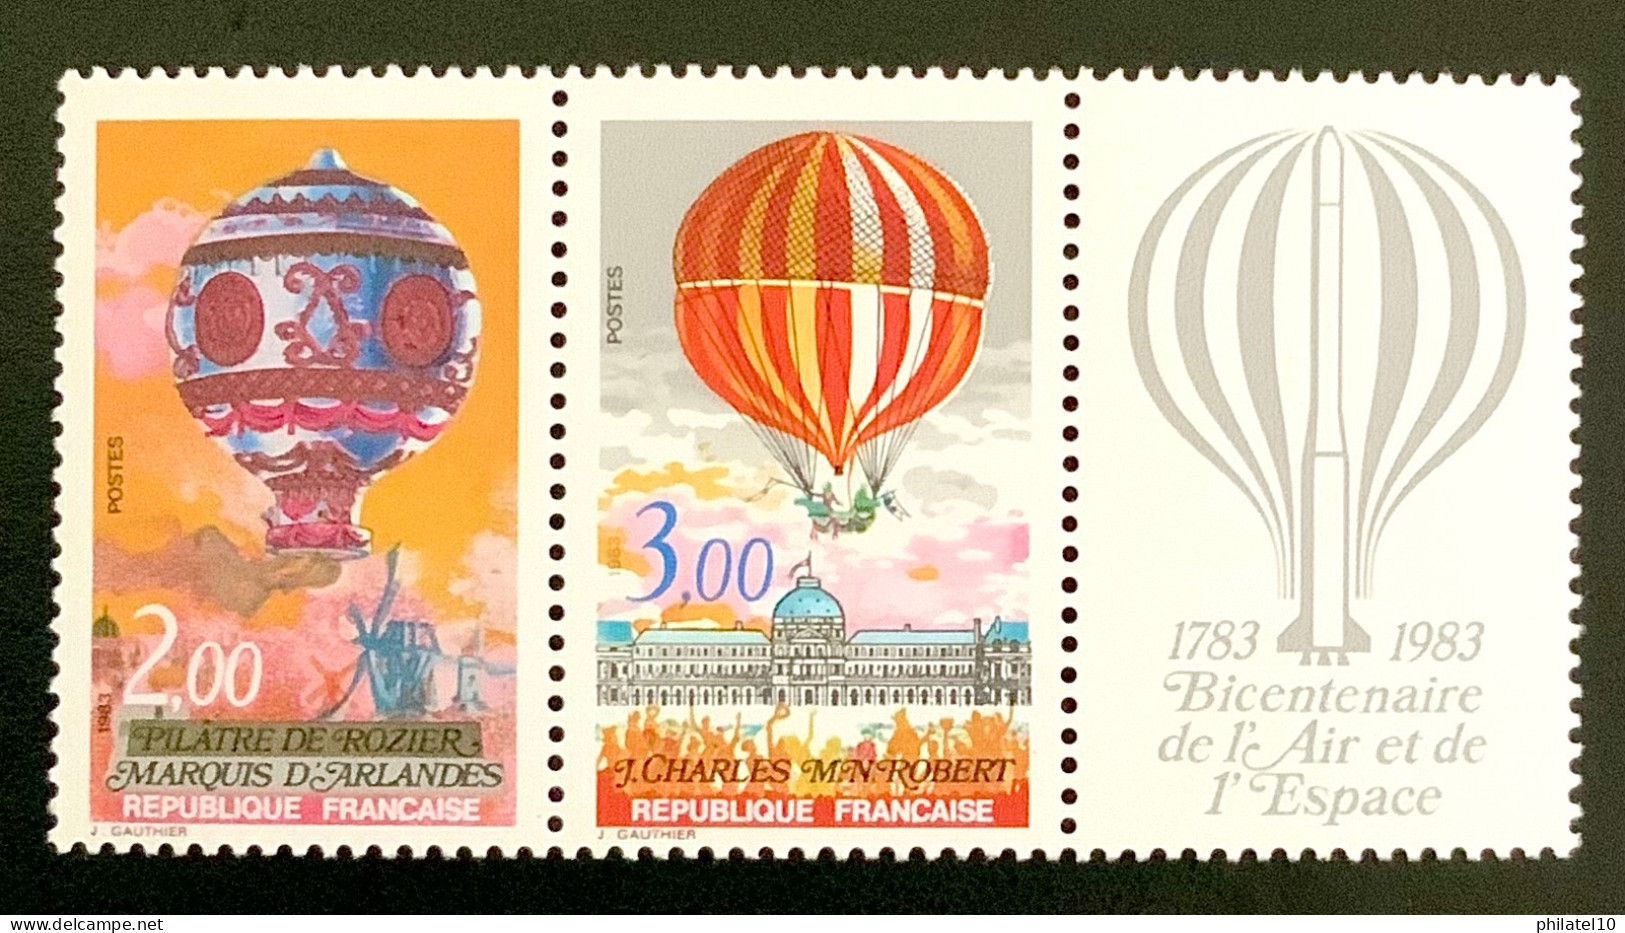 1983 FRANCE N P2262A BICENTENAIRE DE L’AIR ET DE L’ESPACE - NEUF** - Unused Stamps